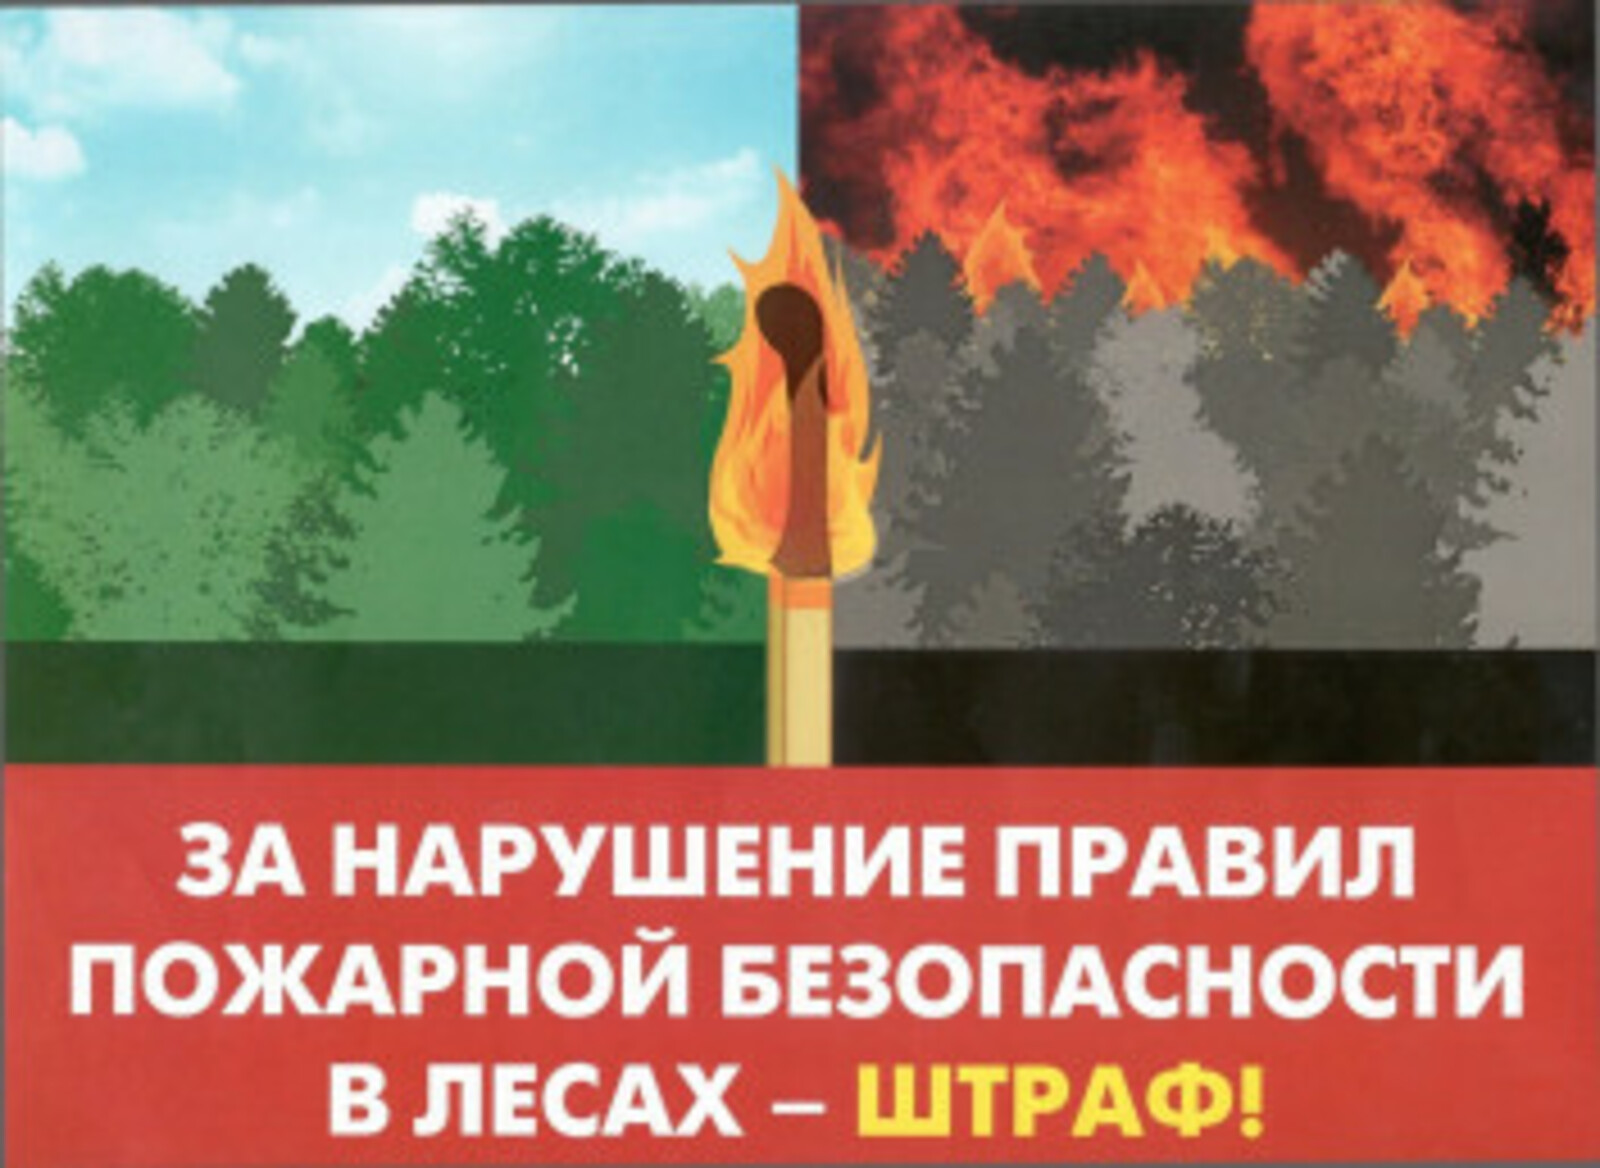 Информация об оперативной лесопожарной обстановке на территории Республики Башкортостан по состоянию на 1 мая 2022 года •